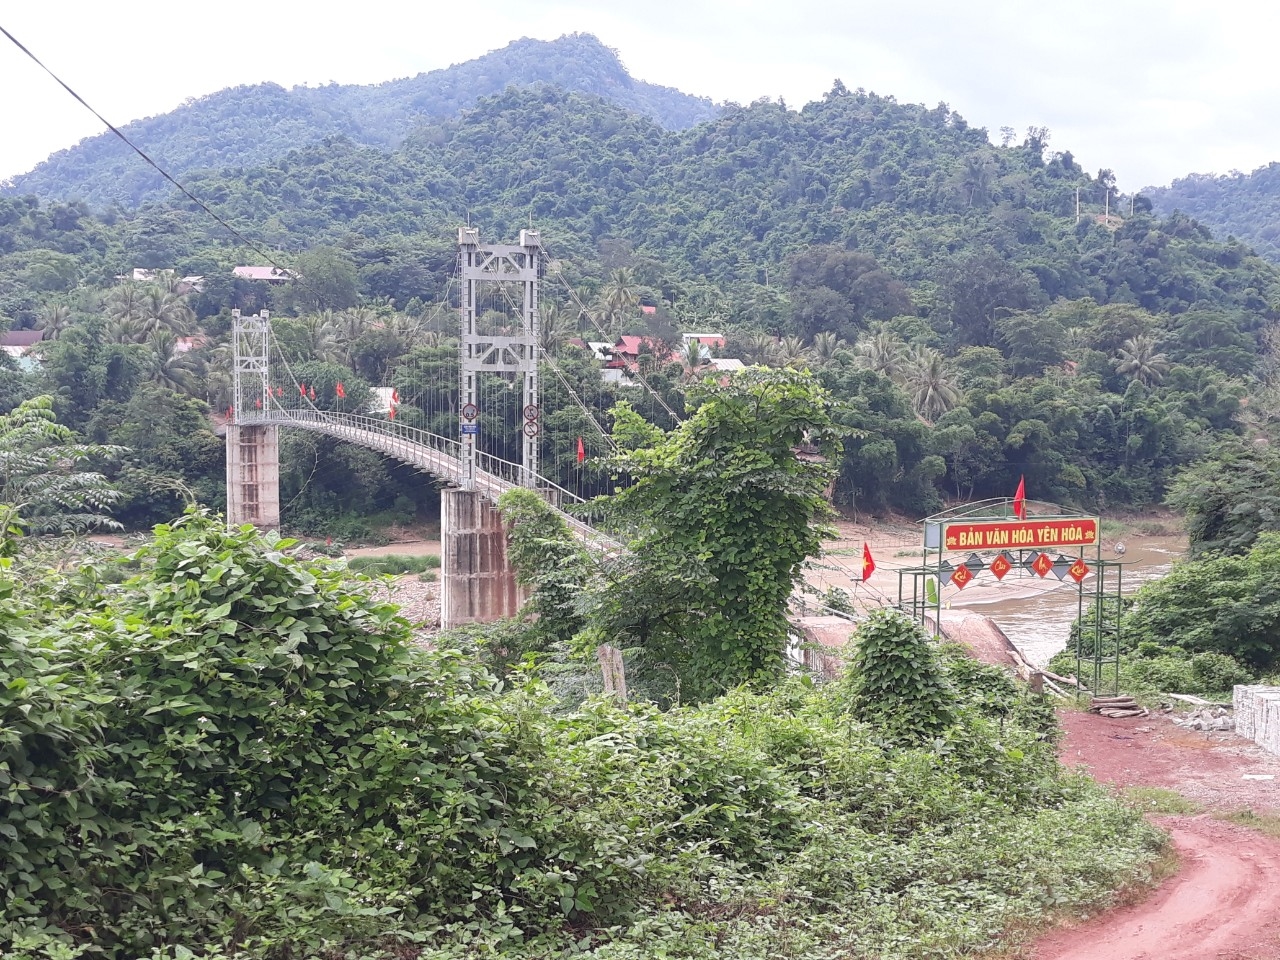 Cây cầu treo bản Yên Hòa là cánh cửa mở ra thế giới bên ngoài với 3 bản khác bên kia sông